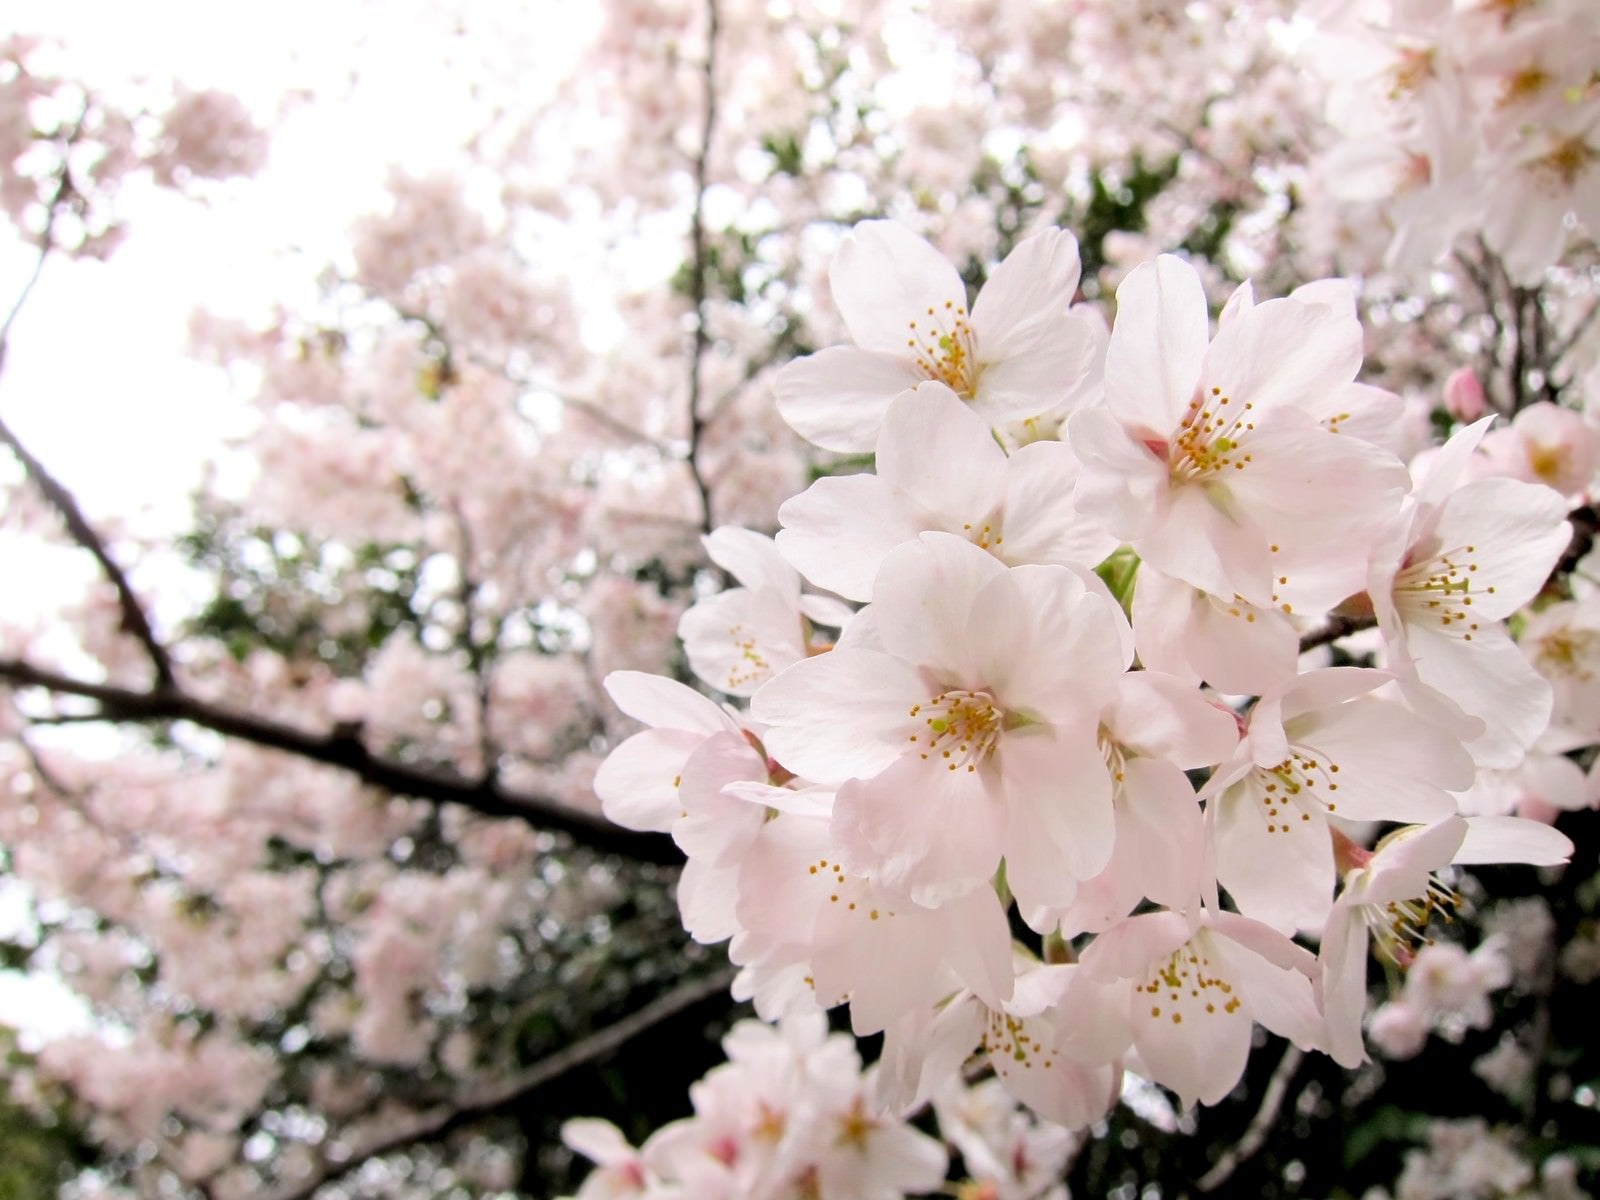 「淡いピンク色の桜」の写真